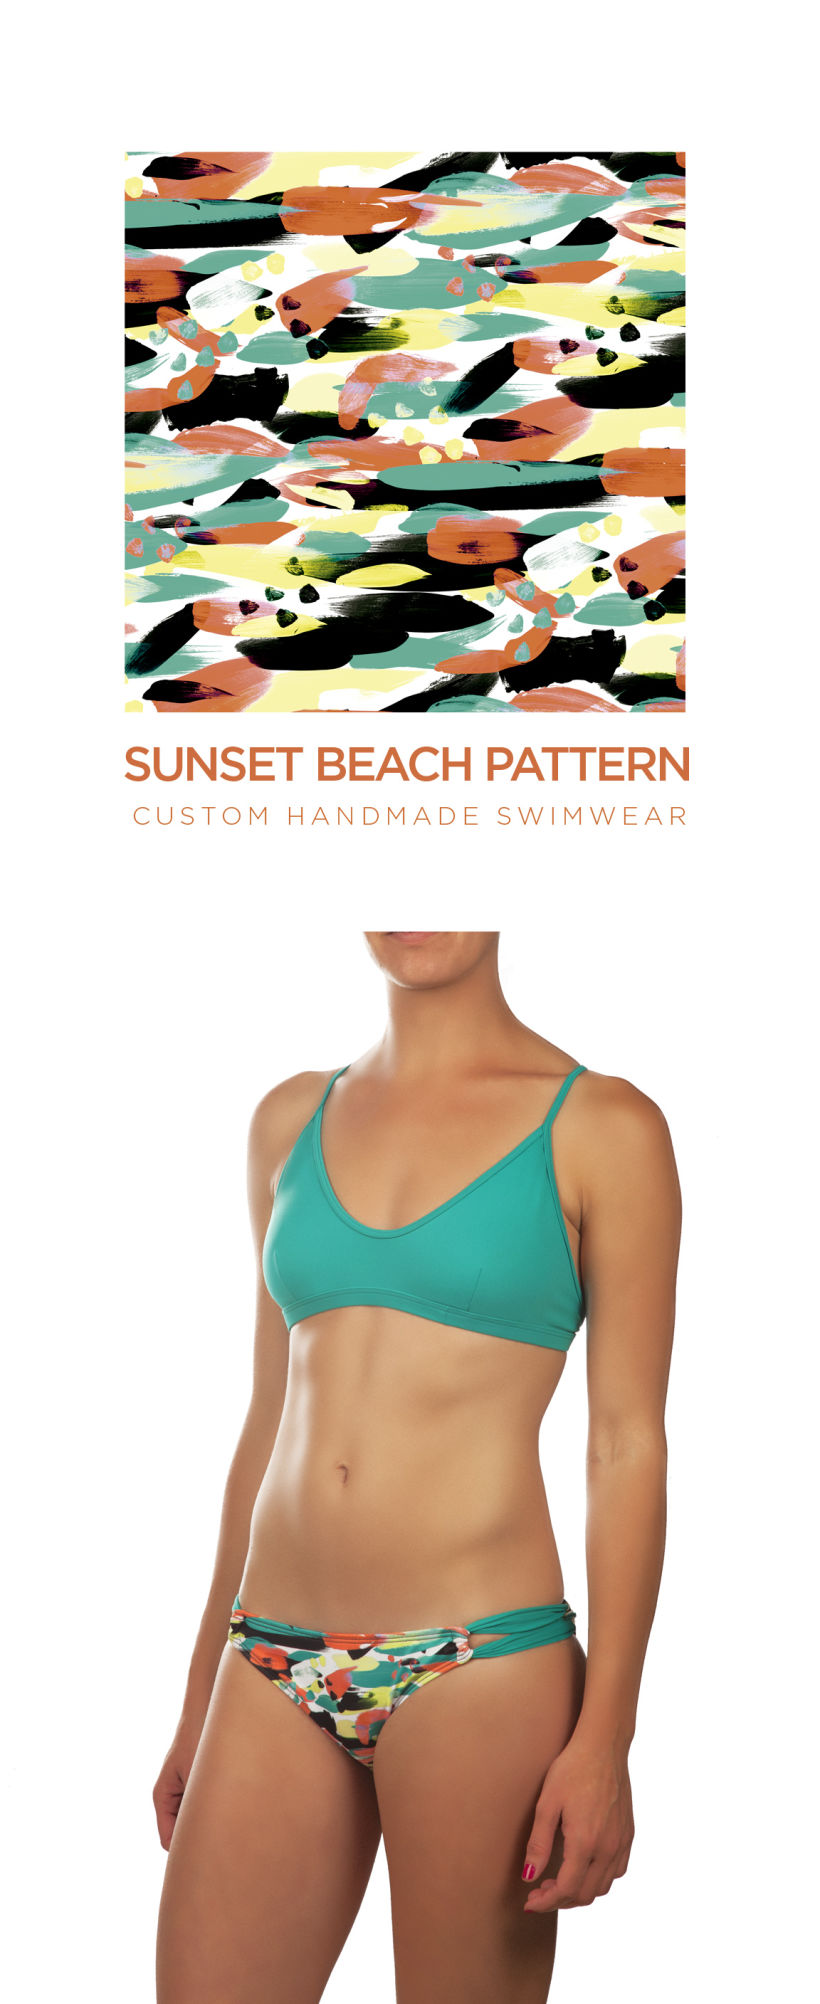 swimwear pattern by FIUFIUU Barcelon 9